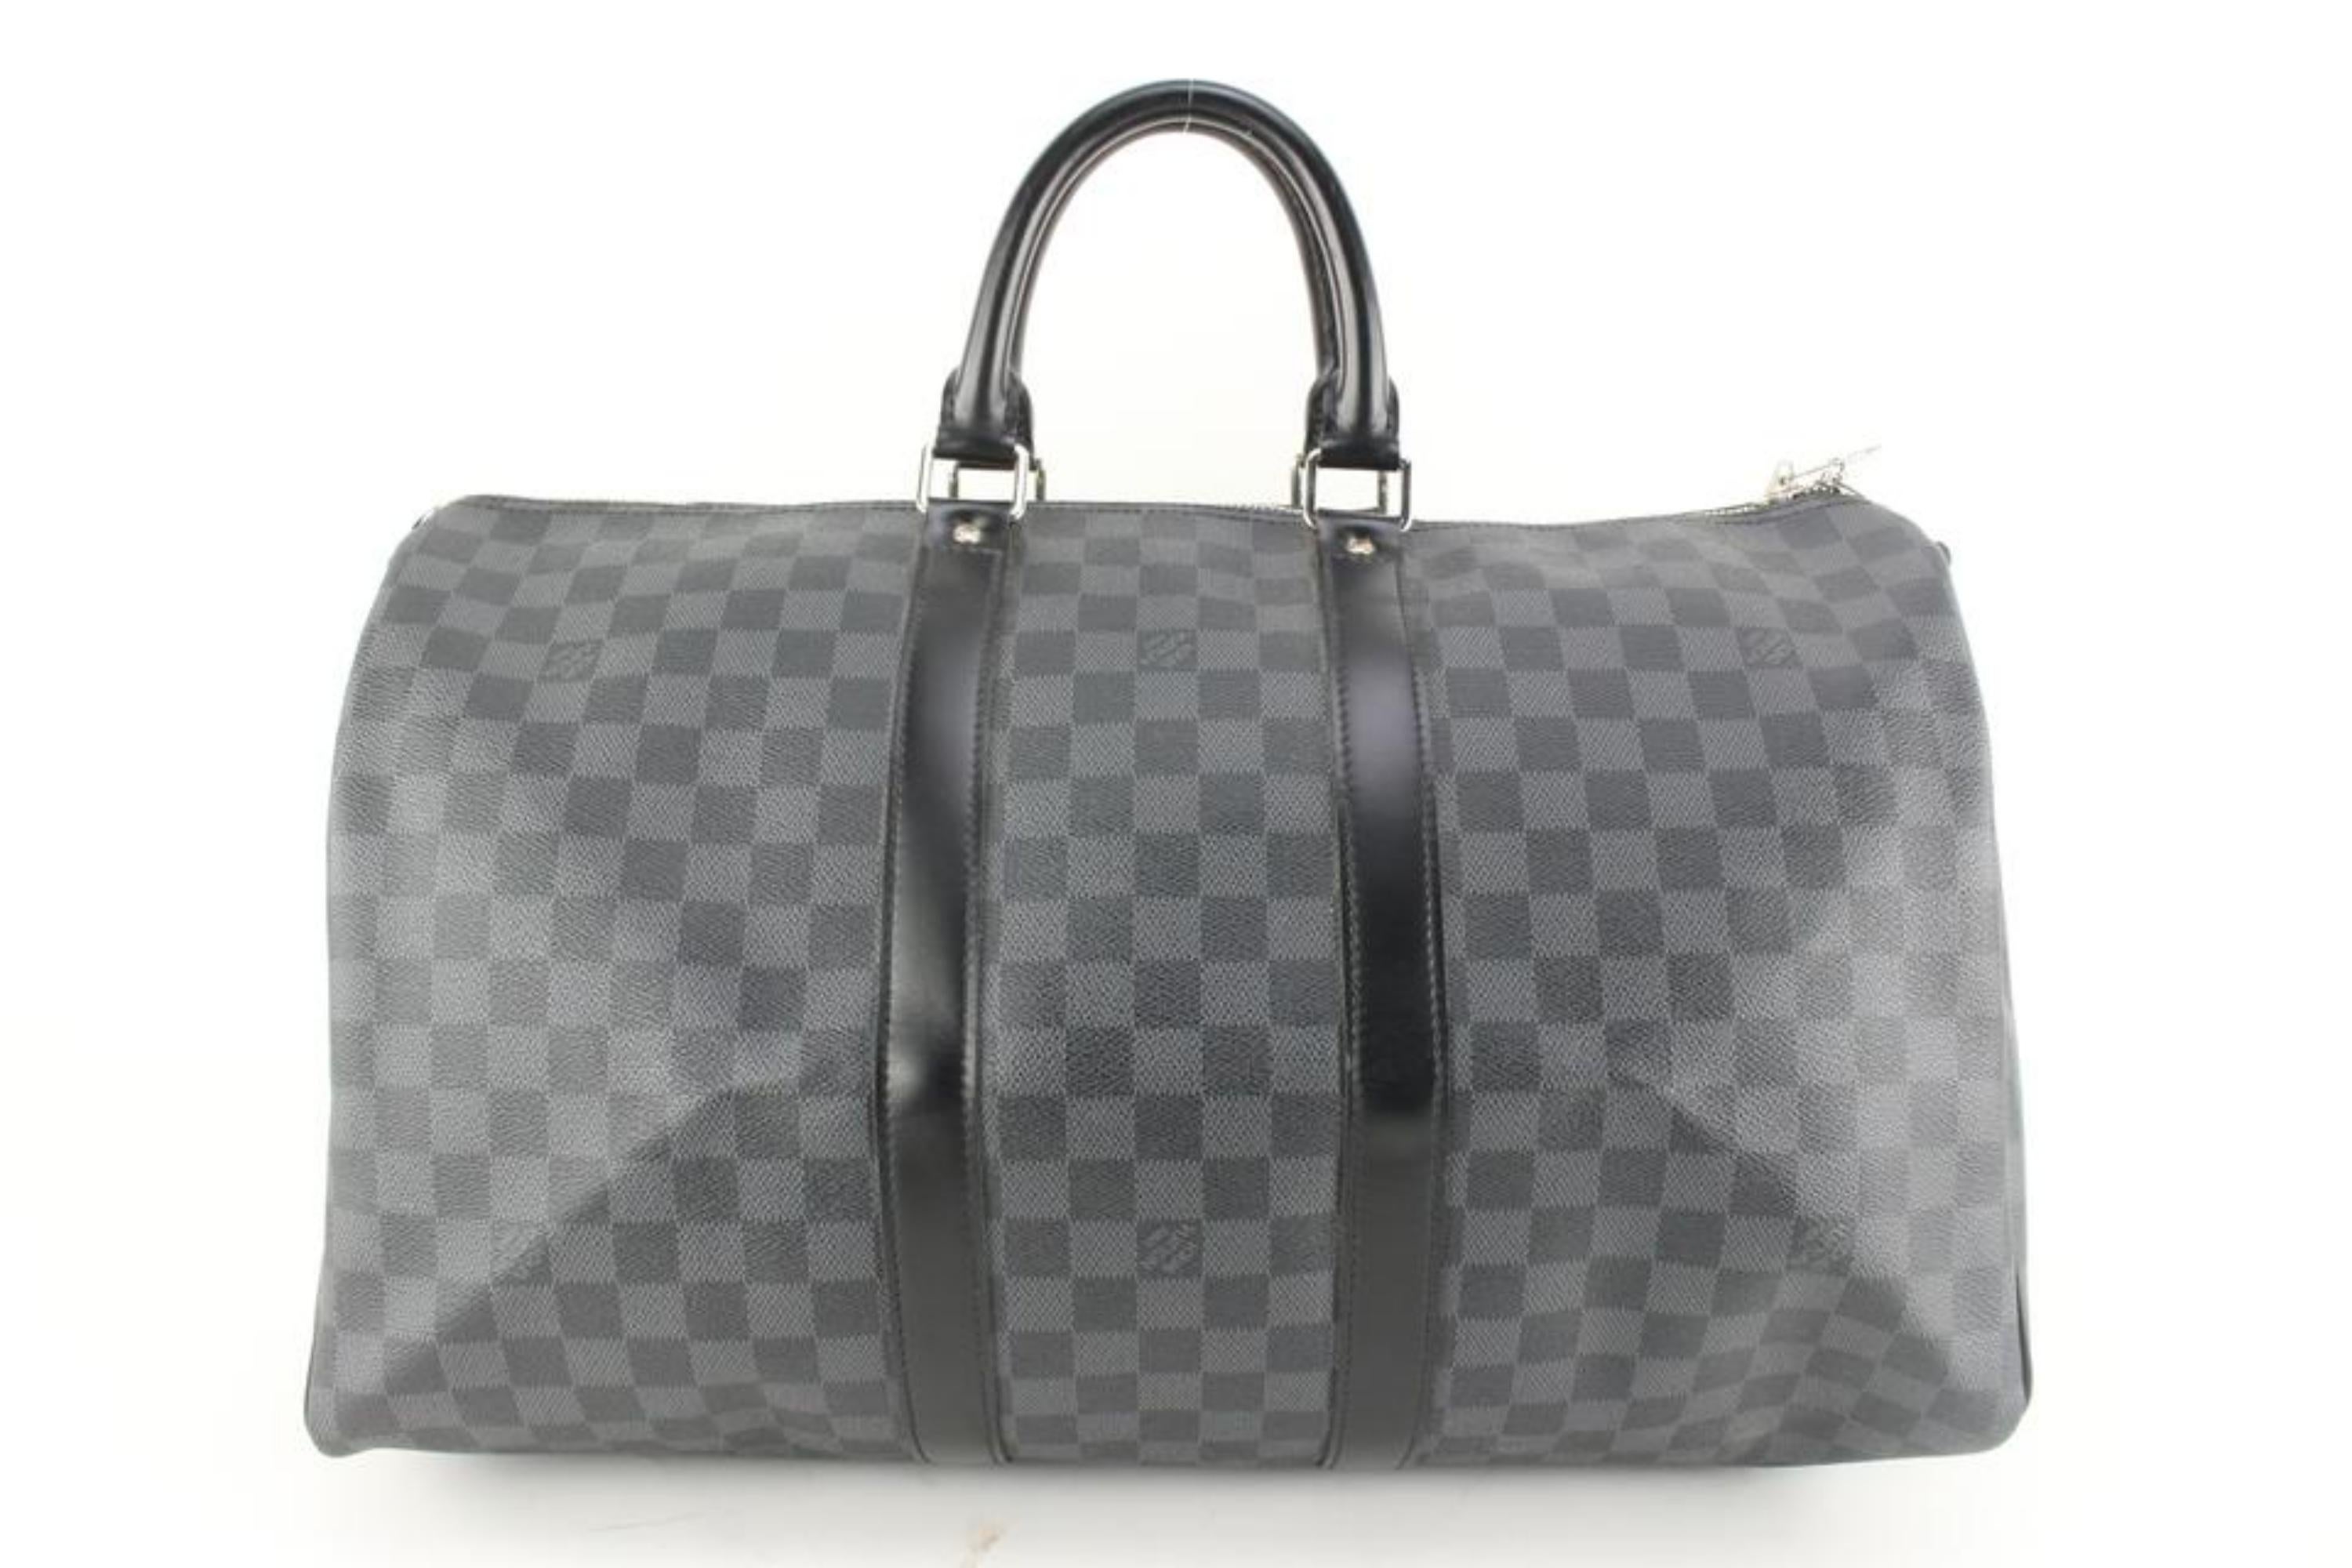 Louis Vuitton Black Damier Graphite Keepall Bandouliere 45 Duffle Bag 4l830a For Sale 2